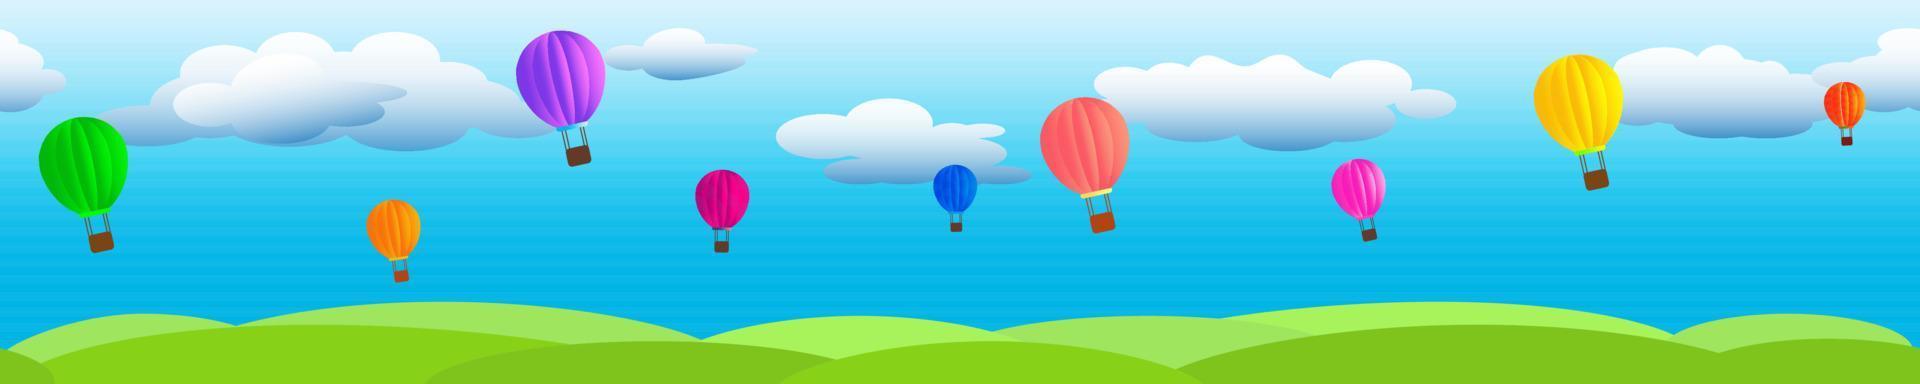 nuvens em um céu azul com balões voando e grama verde. vetor